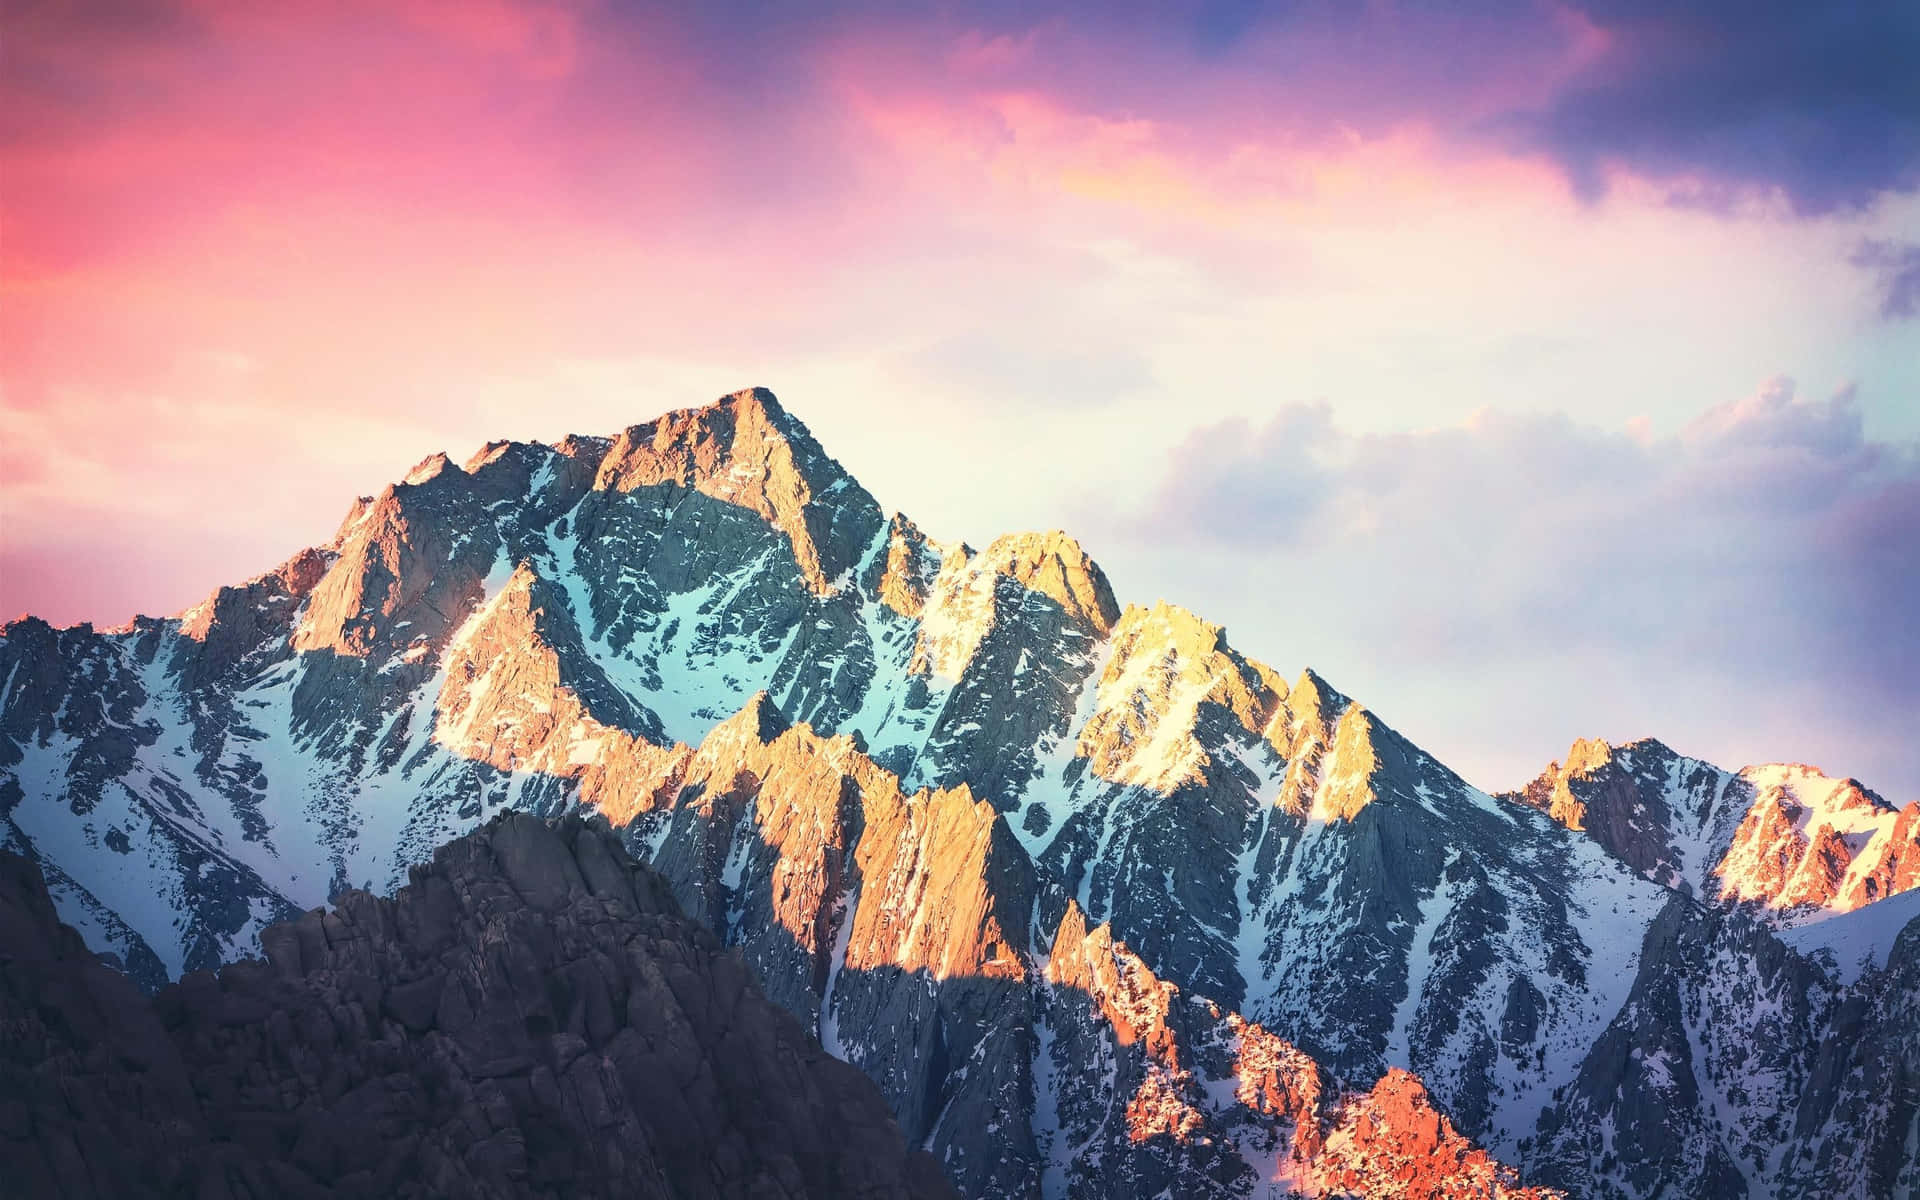 Take in the breathtaking High Sierra landscape. Wallpaper